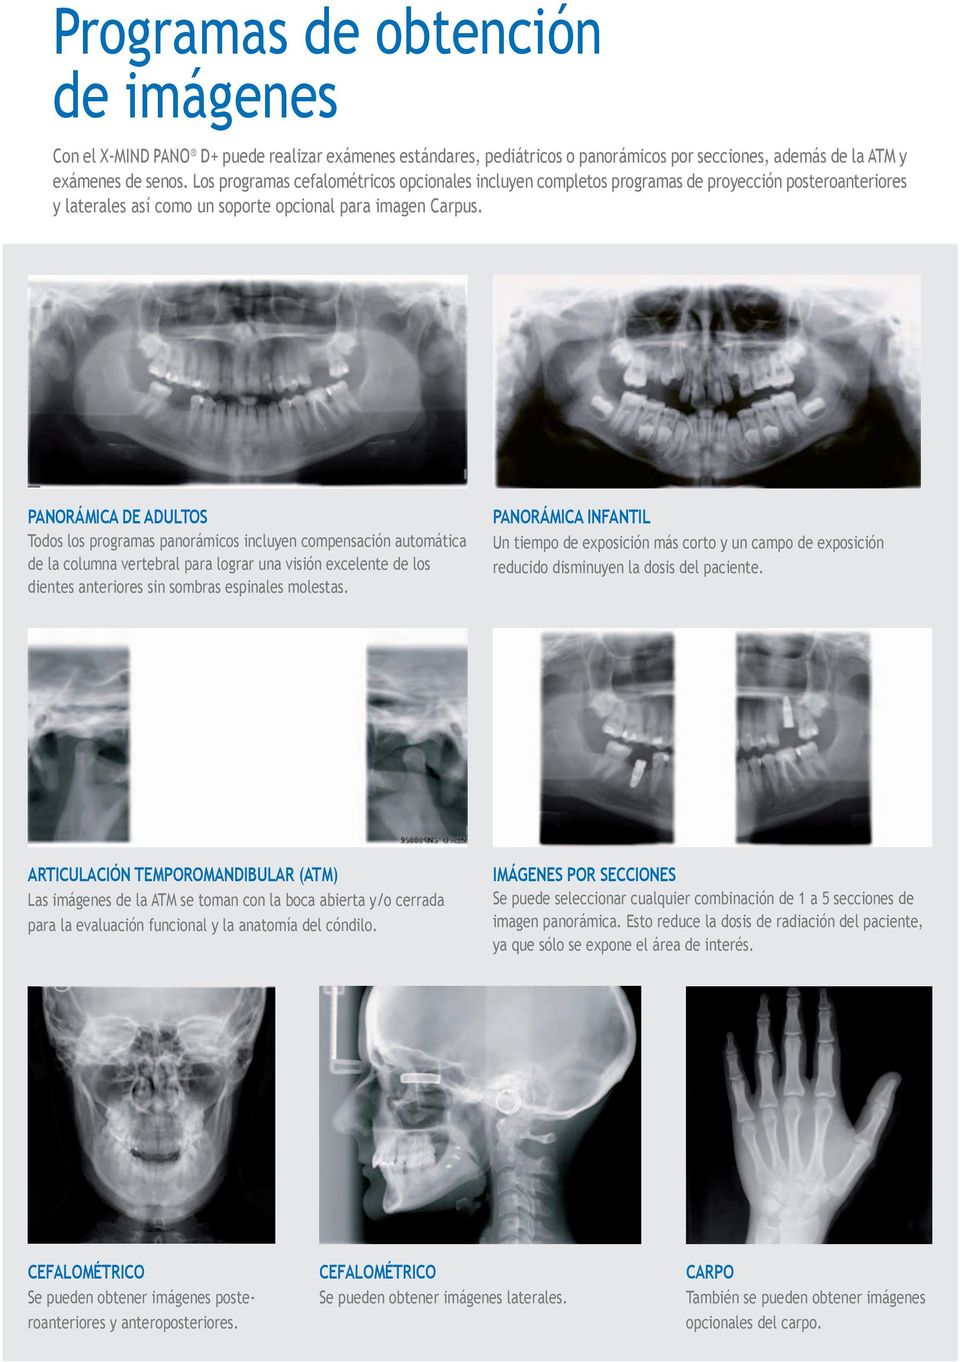 PANORÁMICA DE ADULTOS Todos los programas panorámicos incluyen compensación automática de la columna vertebral para lograr una visión excelente de los dientes anteriores sin sombras espinales